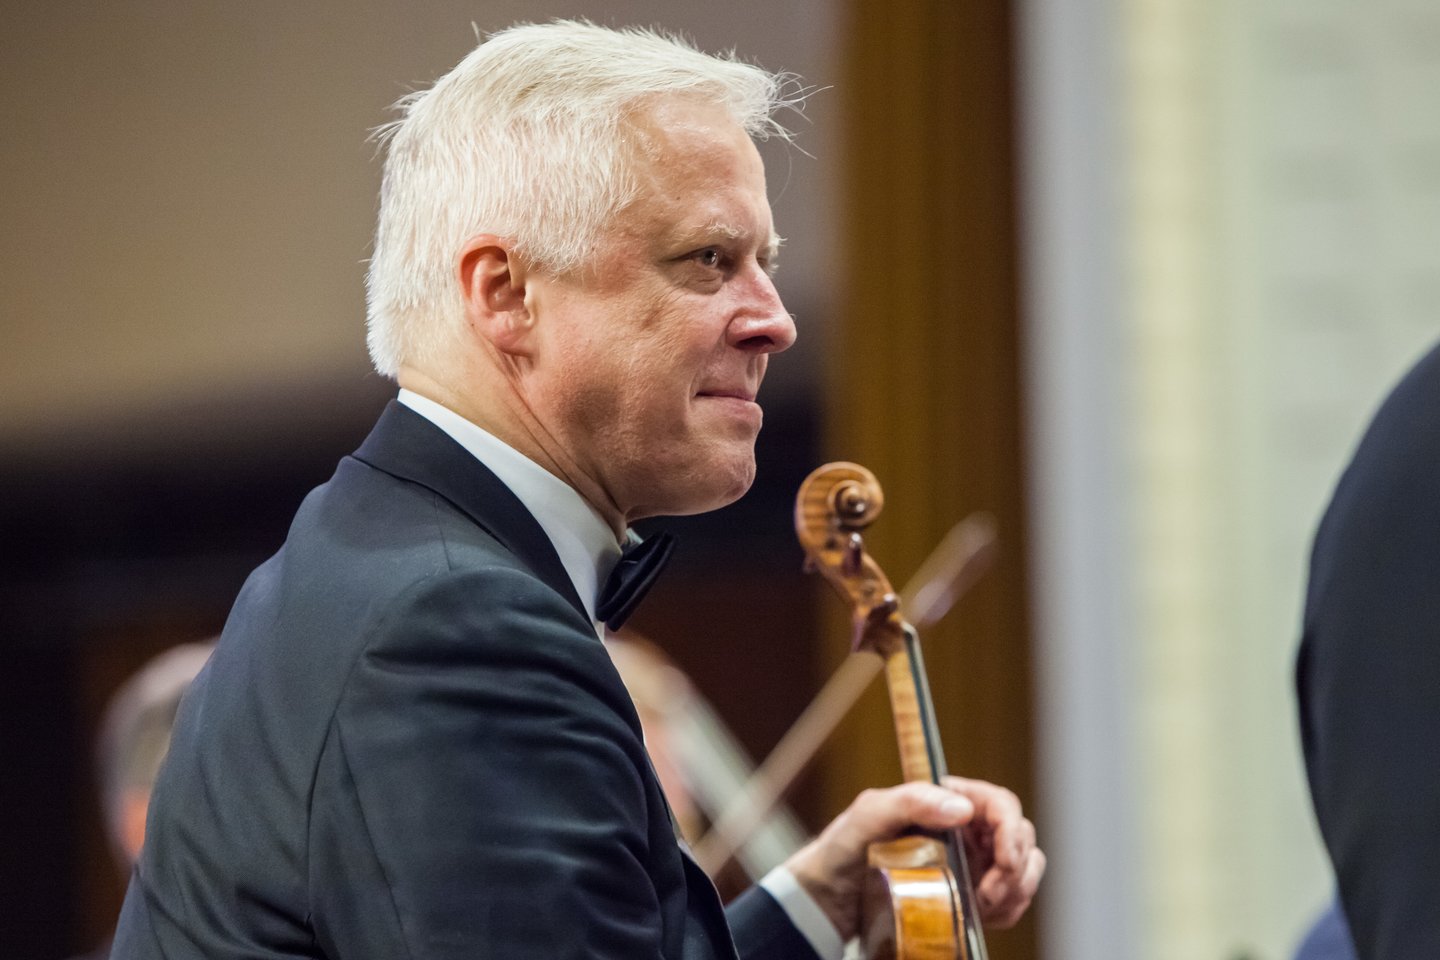 Lietuvos nacionalinės filharmonijos Didžiojoje salėje įvyko koncertas „Amžinoji klasika“.<br>I.Juodytės nuotr.